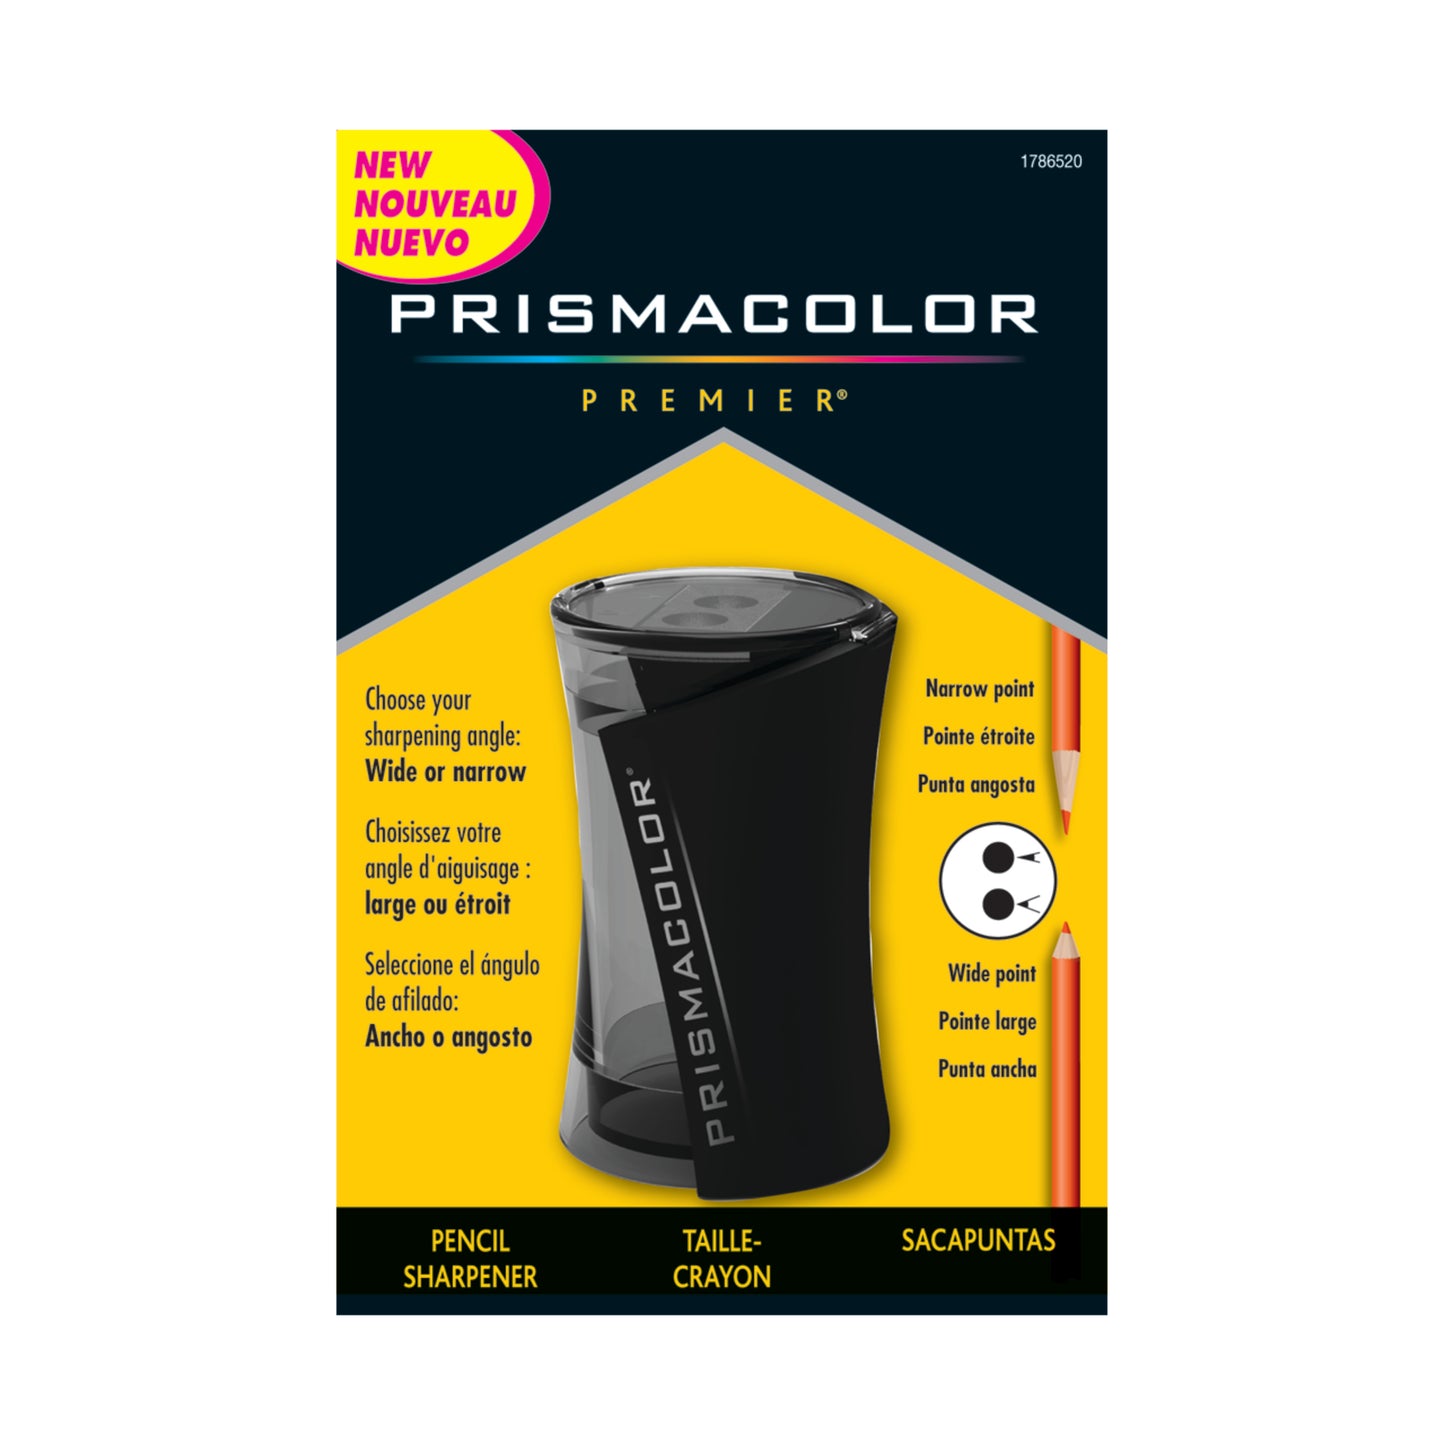 Taille-crayon à deux fentes Prismacolor Premier